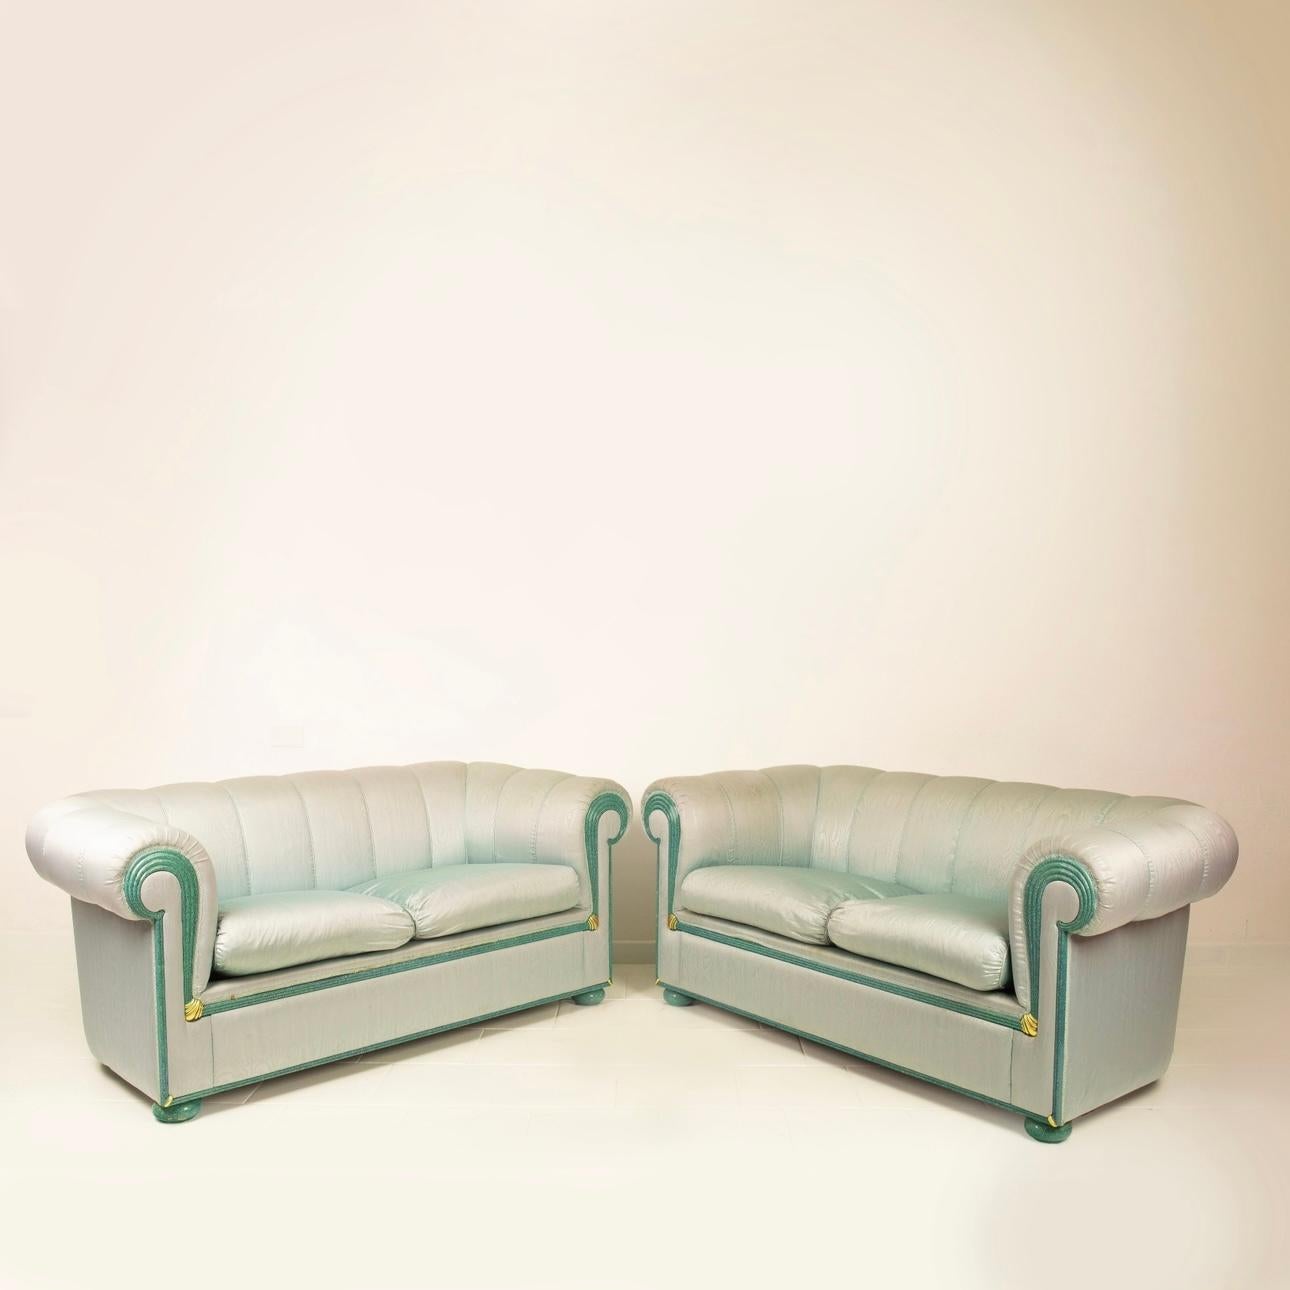 Pair of sofas by Fabrizio Smania for Smania Studio Interni For Sale 4